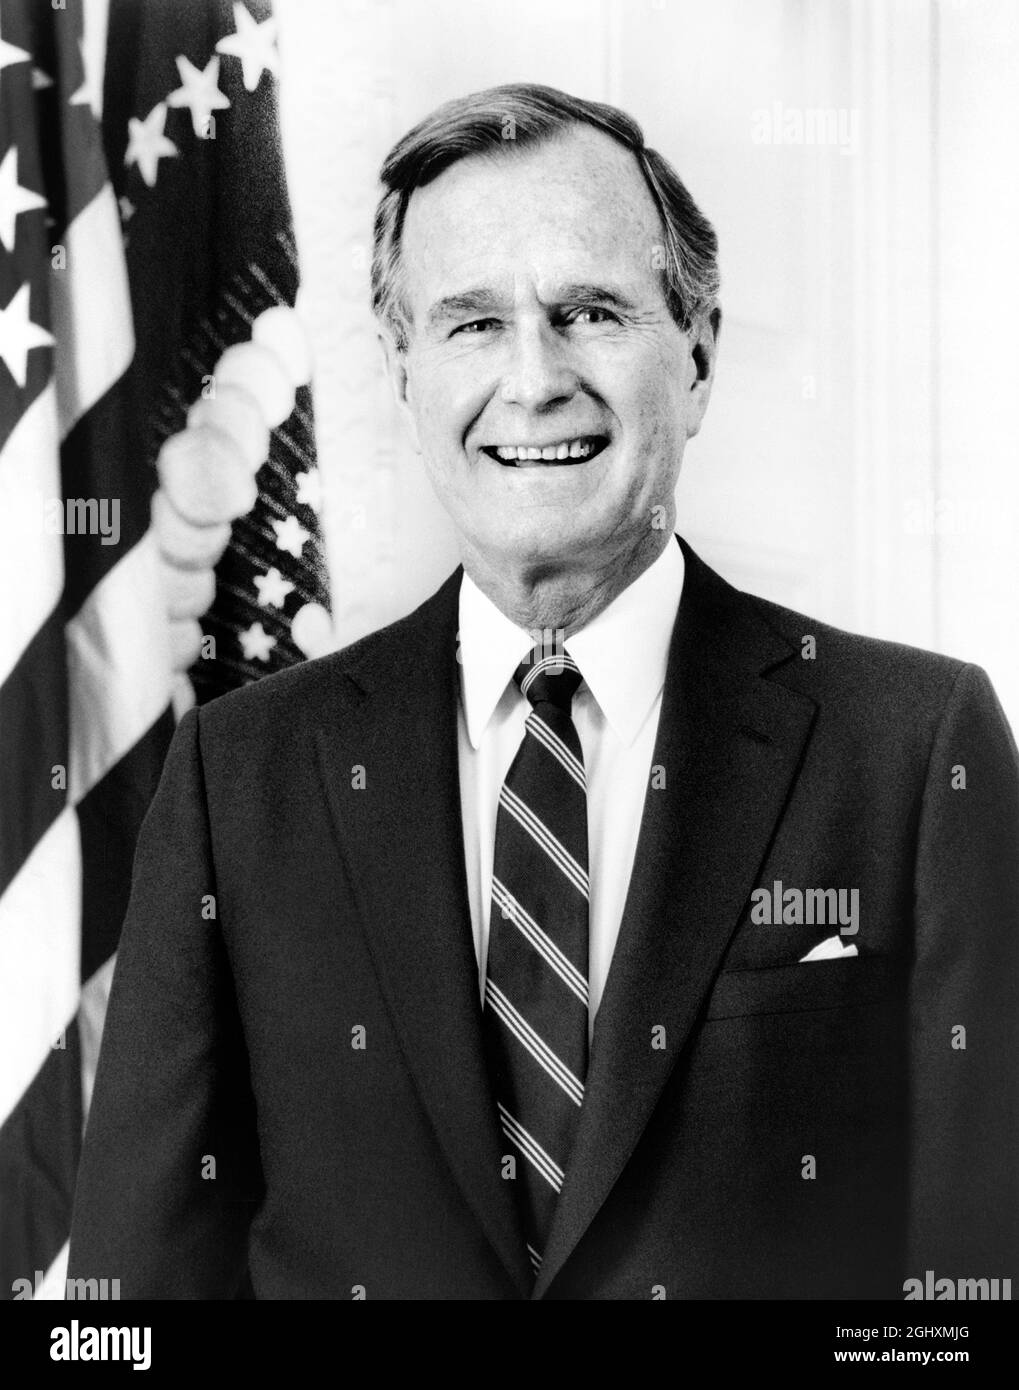 Le président américain George H.W. Bush, Portrait en demi-longueur à côté du drapeau américain, Washington, D.C., États-Unis, David Valdez, 1989 Banque D'Images